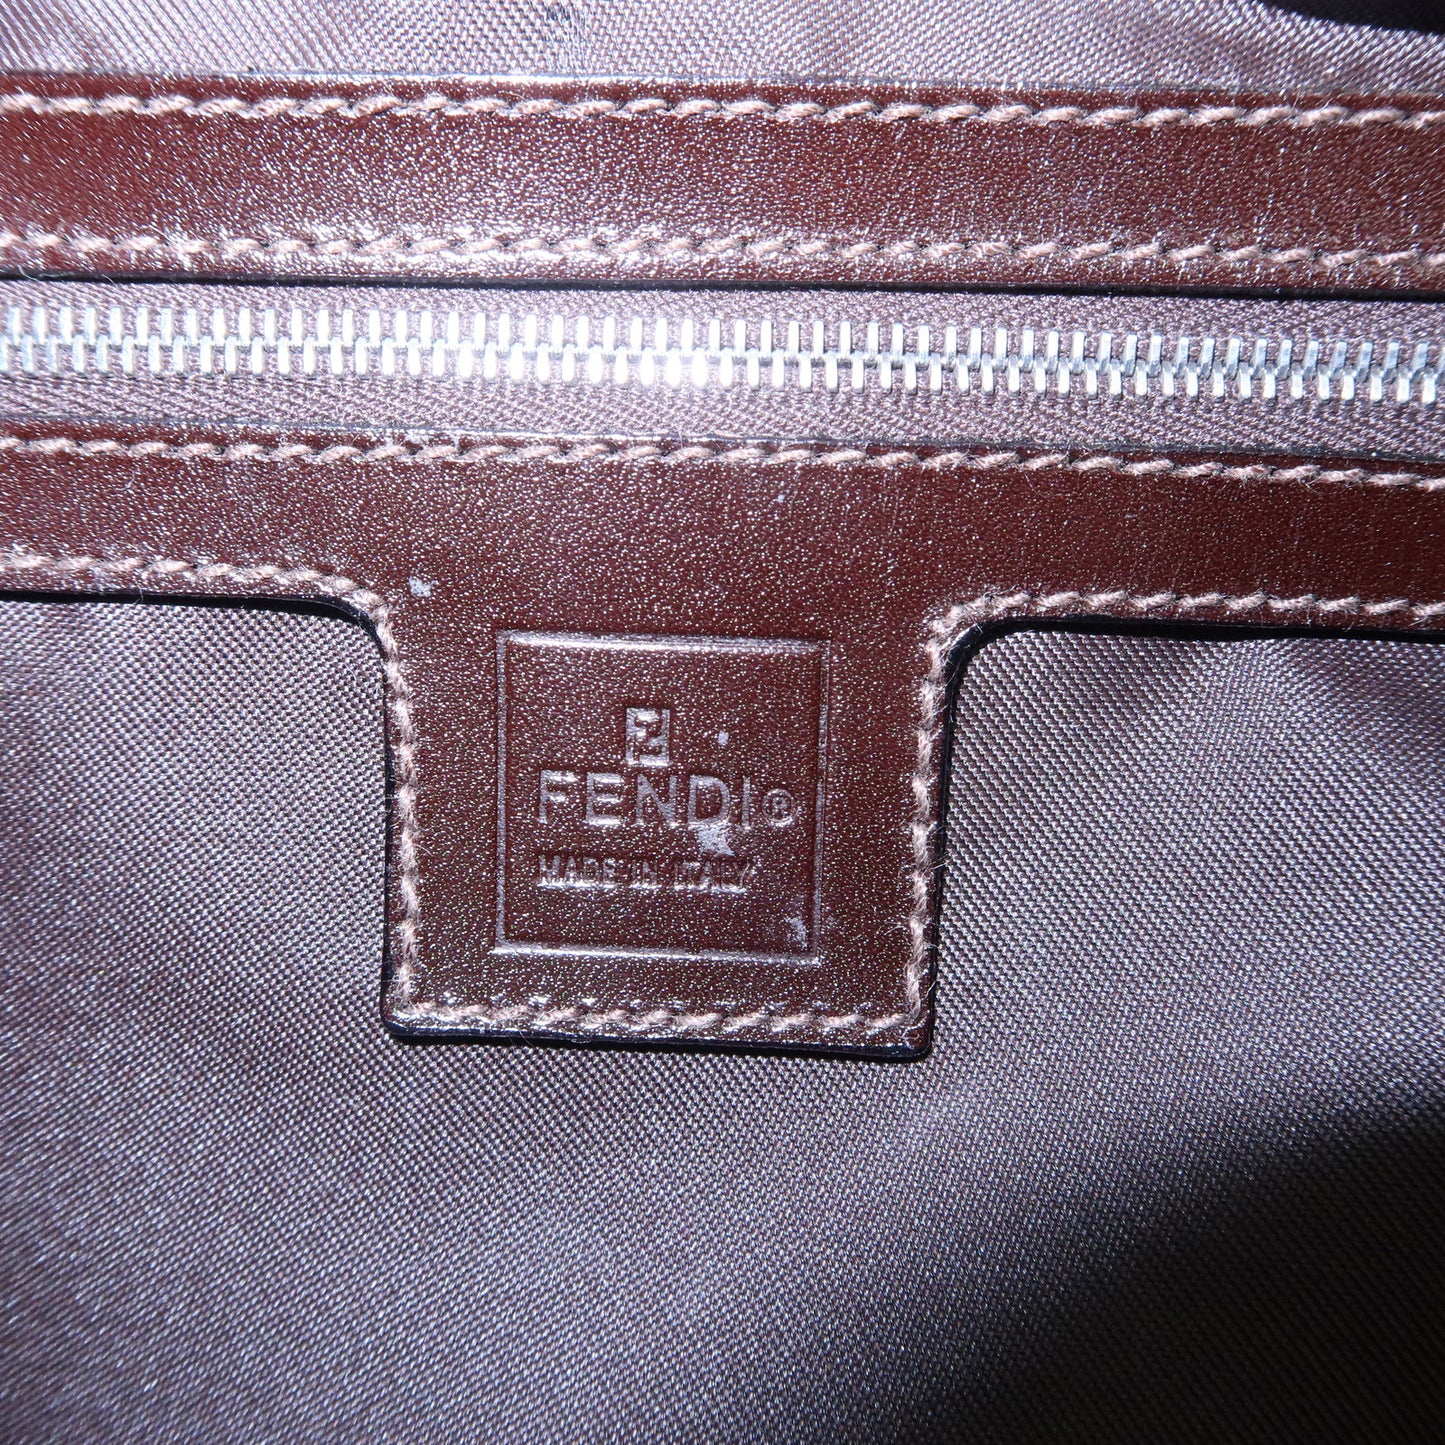 FENDI Zucca Canvas Leather Shoulder Bag Brown Black 0916321001